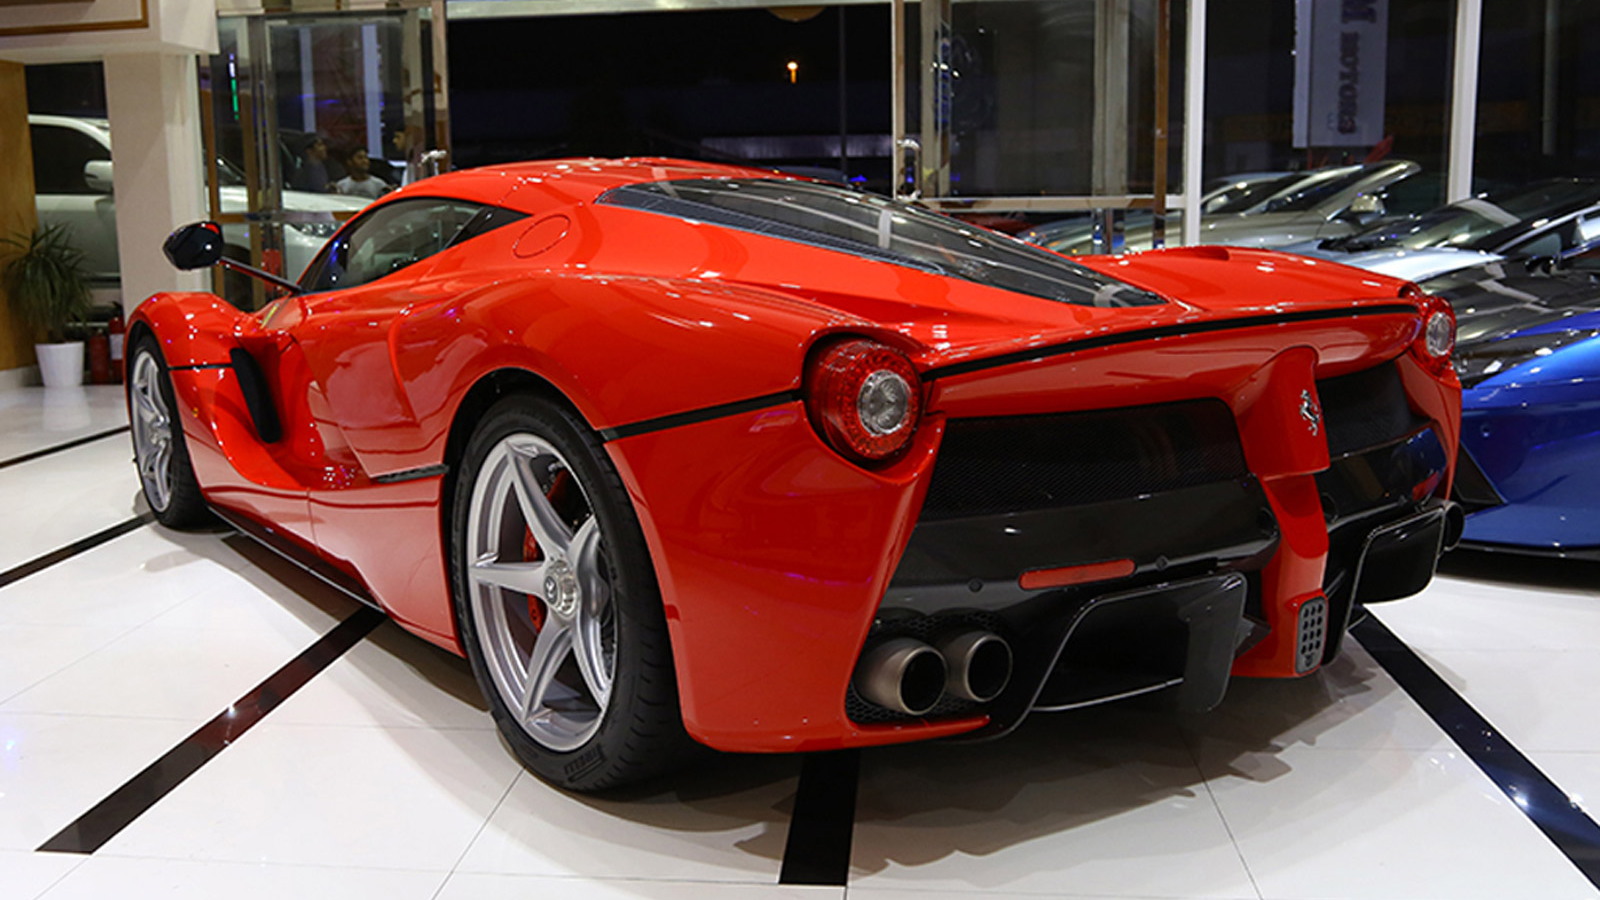 Ferrari LaFerrari up for sale (Image via Auto Trader UAE)